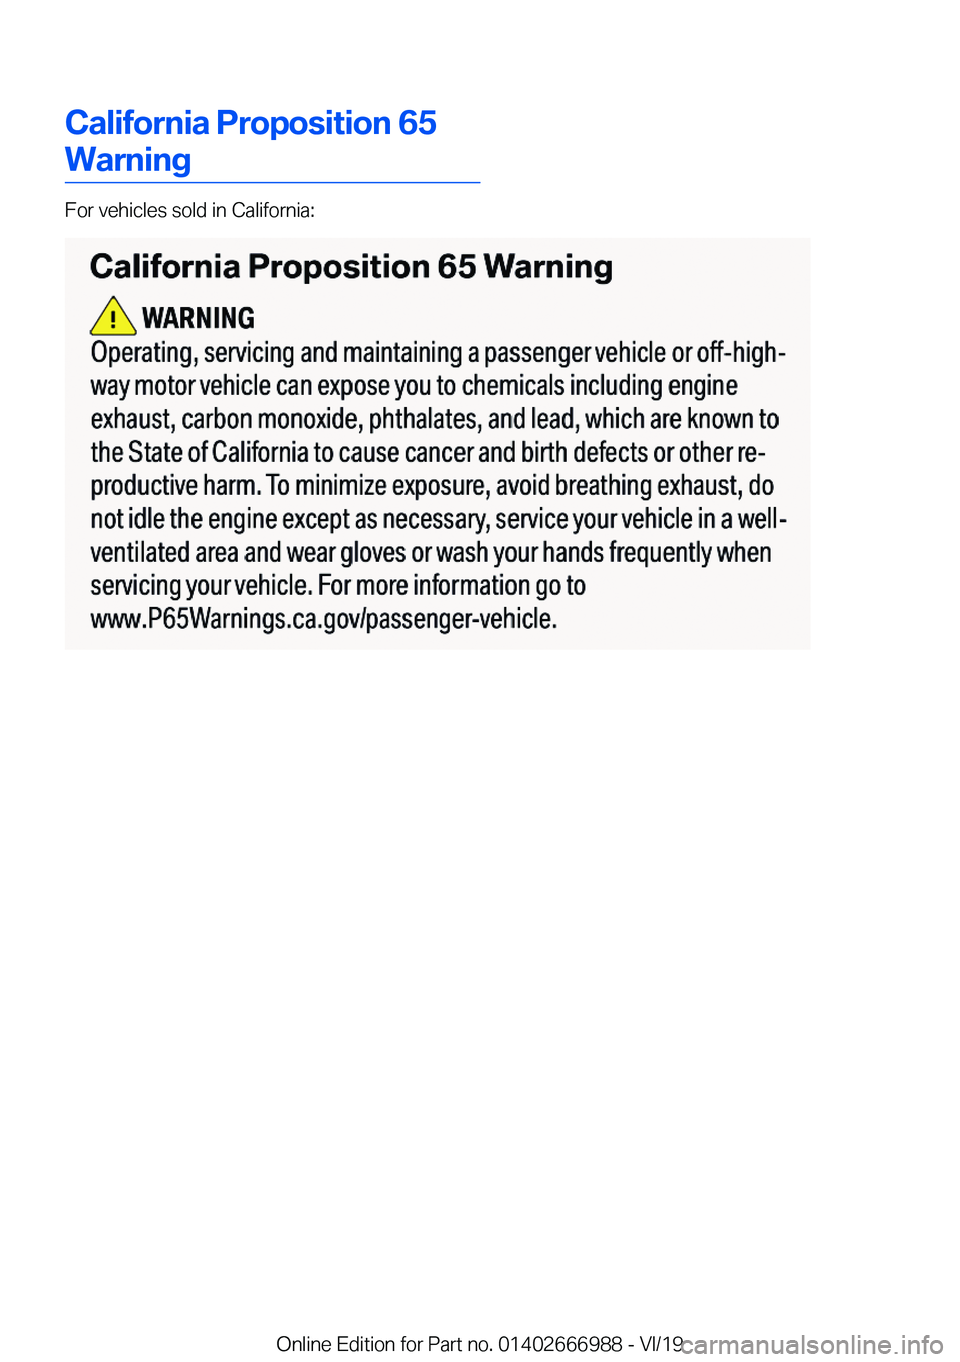 BMW X4 2020  Owners Manual �C�a�l�i�f�o�r�n�i�a��P�r�o�p�o�s�i�t�i�o�n��6�5
�W�a�r�n�i�n�g
�F�o�r��v�e�h�i�c�l�e�s��s�o�l�d��i�n��C�a�l�i�f�o�r�n�i�a�:
�O�n�l�i�n�e��E�d�i�t�i�o�n��f�o�r��P�a�r�t��n�o�.��0�1�4�0�2�6�